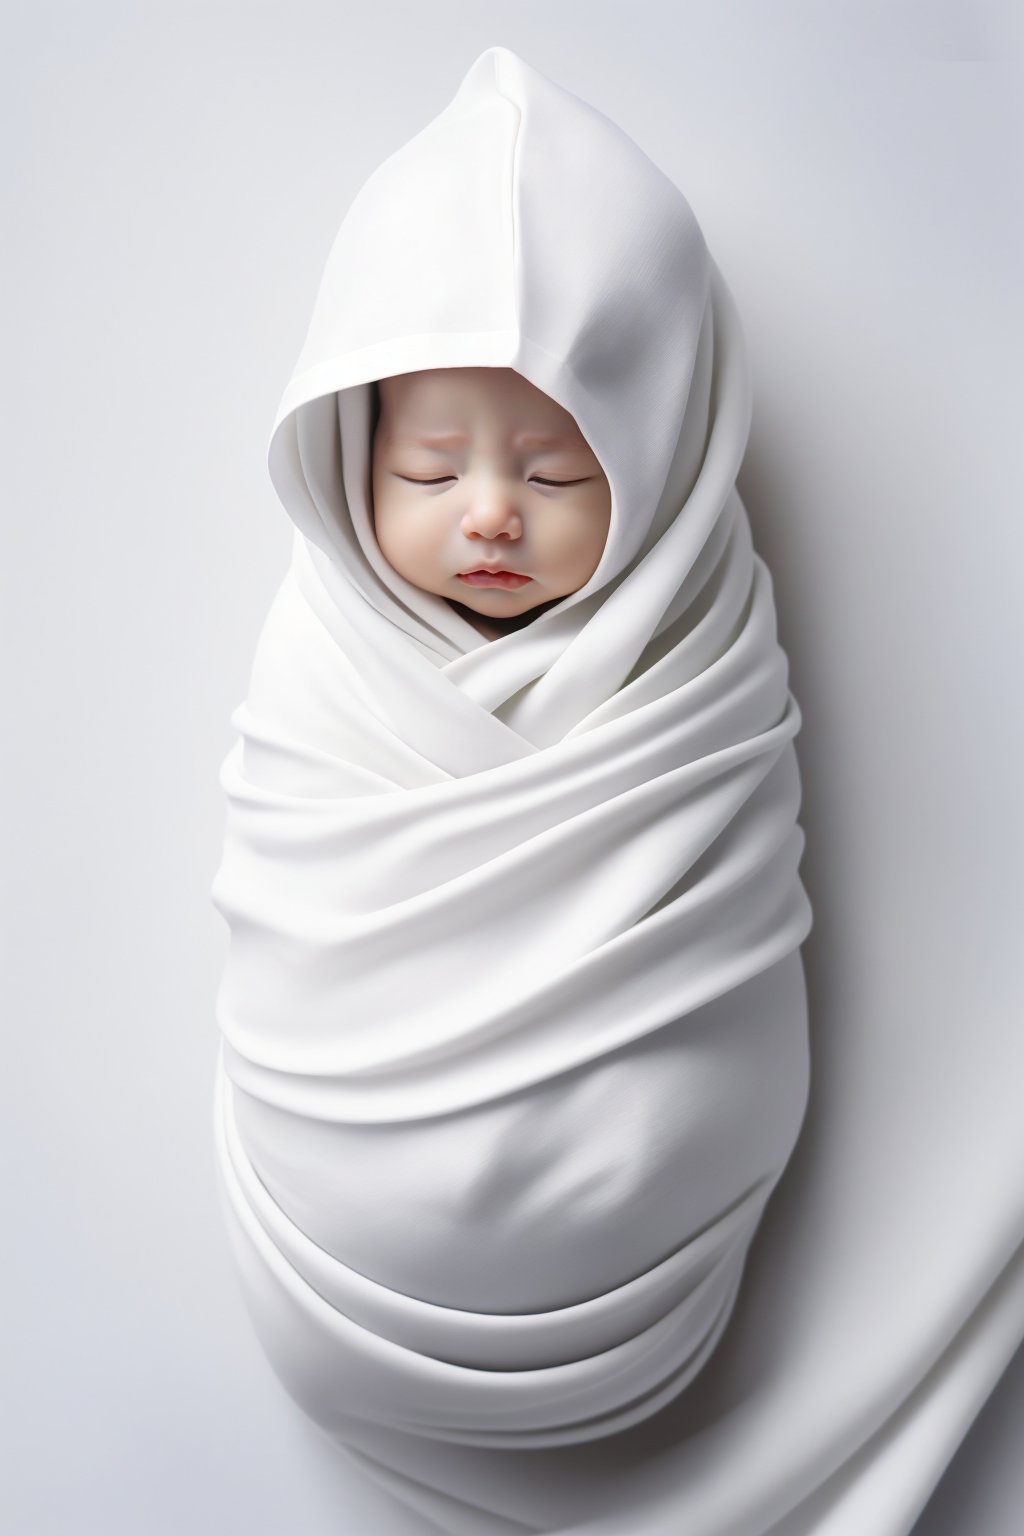 <lora:婴儿写真:0.7>,baby,white_background,swaddle,eyes closed,